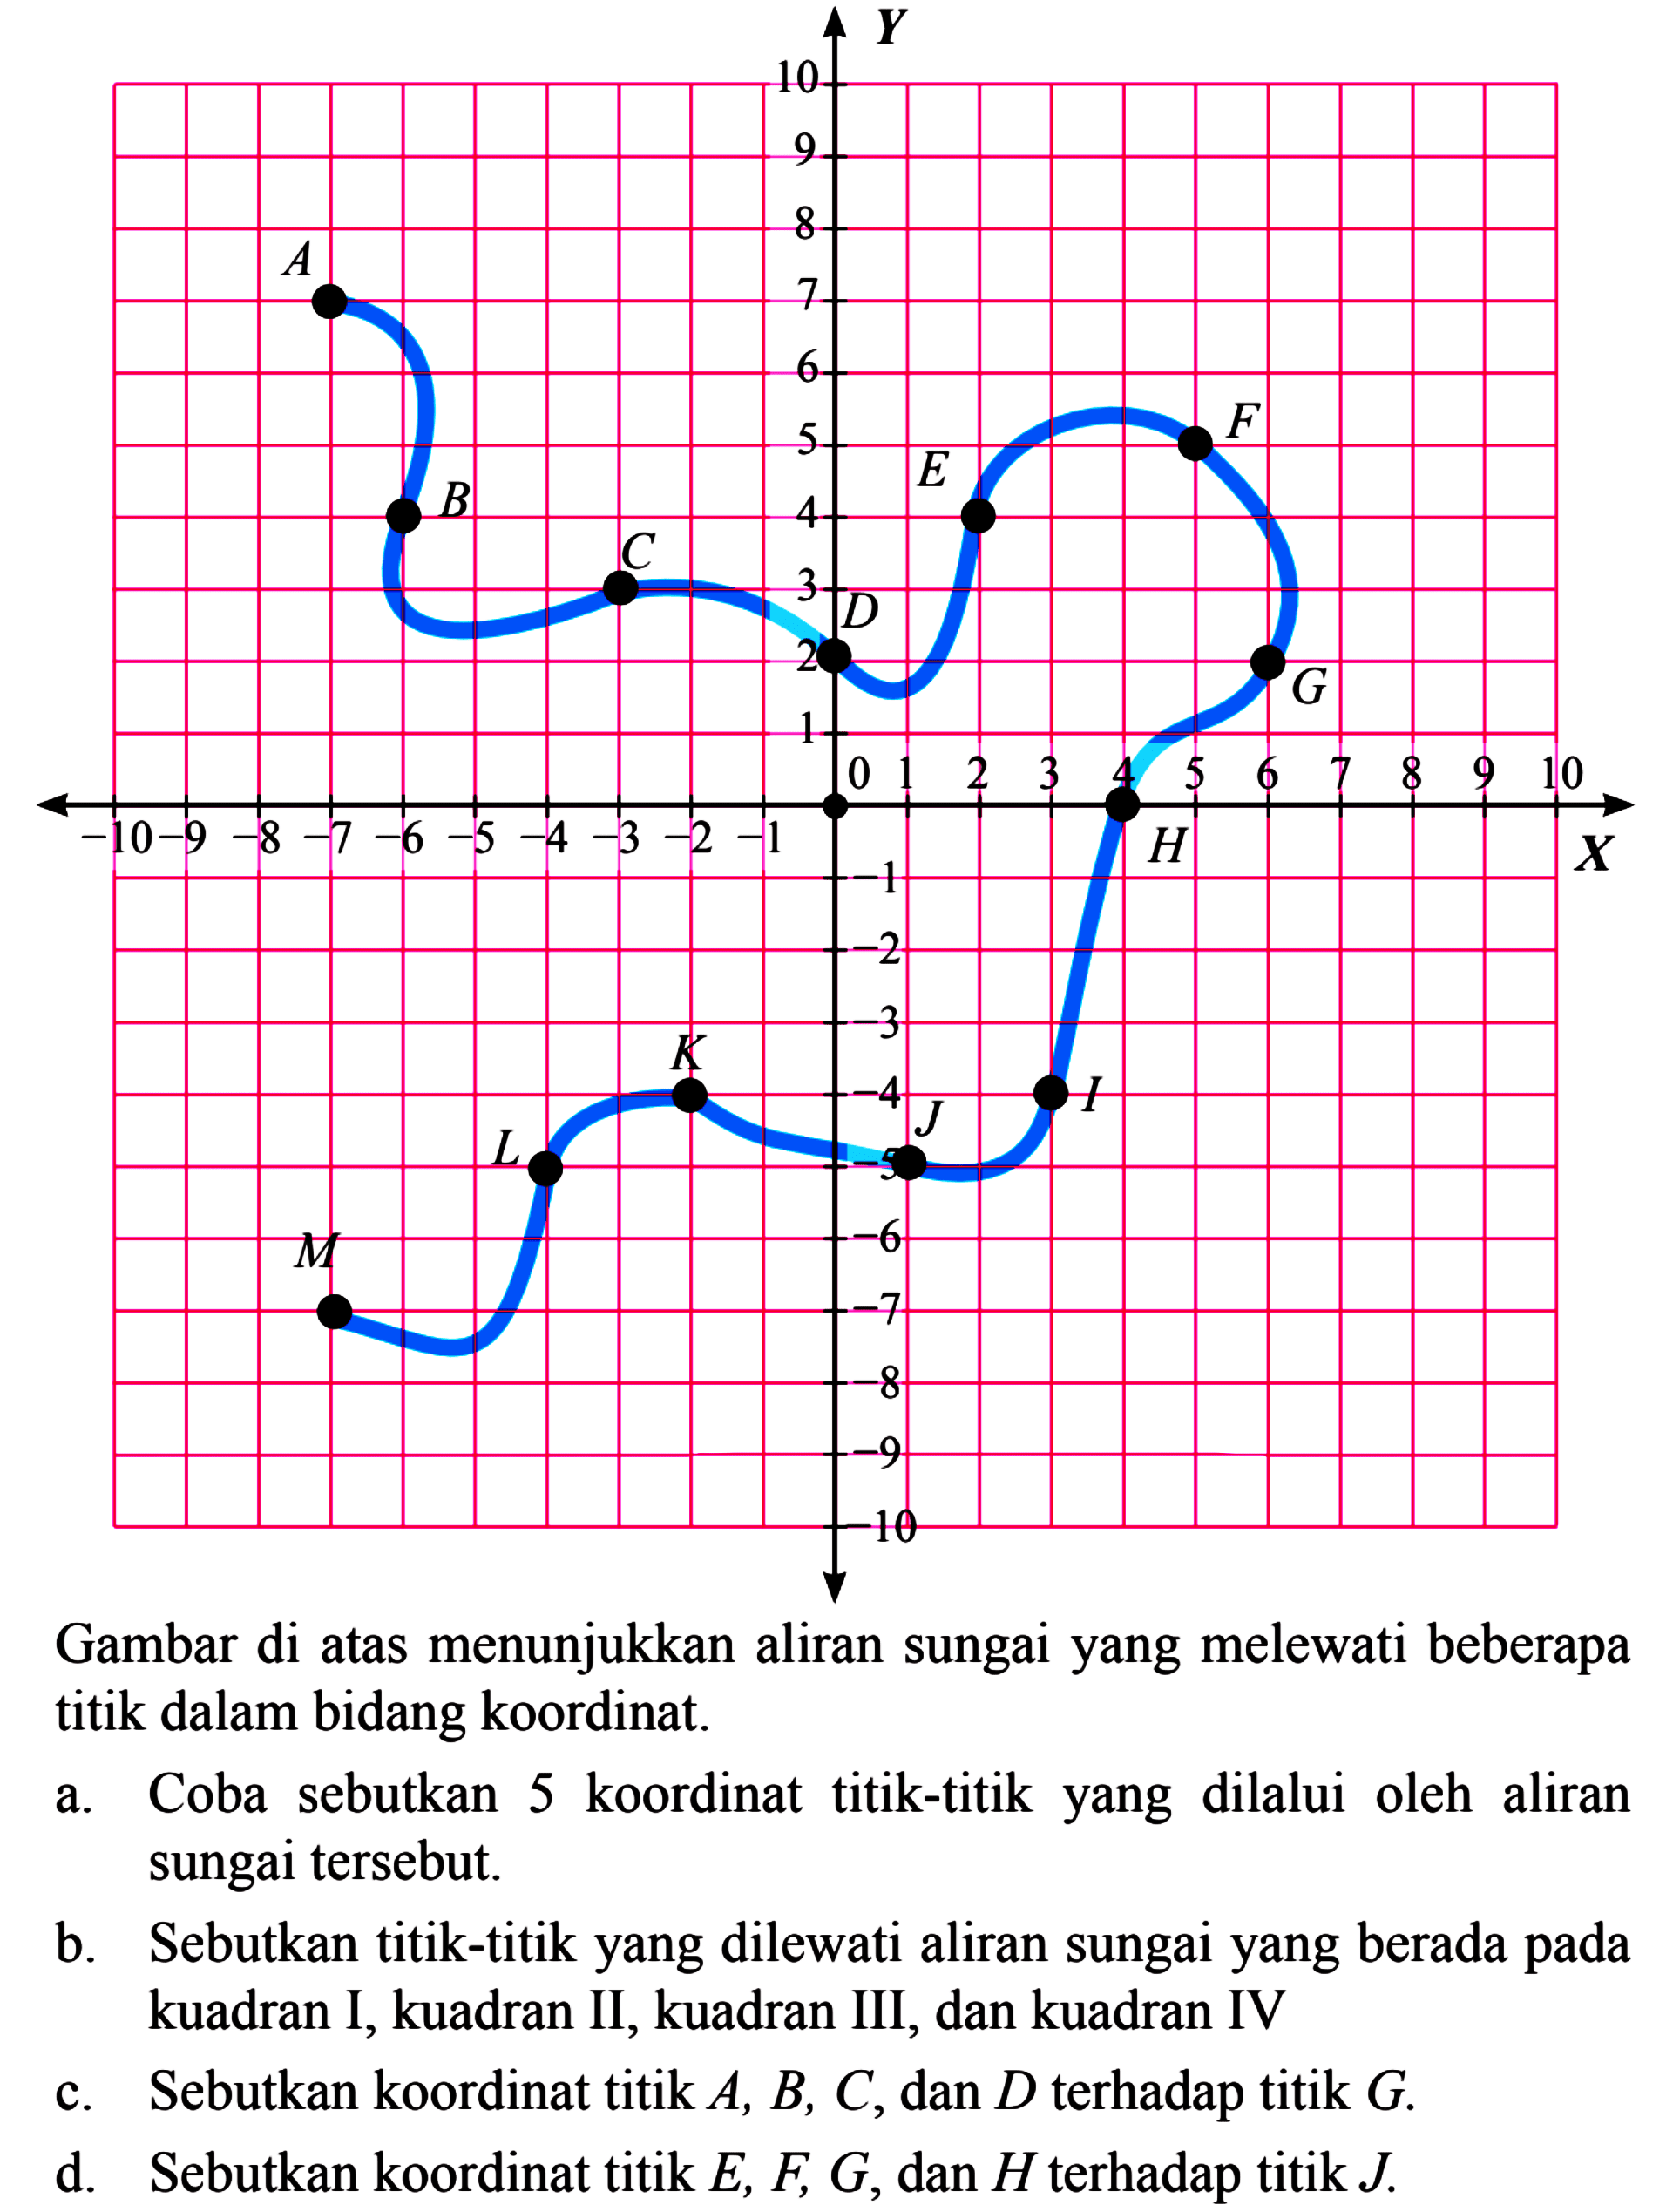 Gambar di atas menunjukkan aliran sungai yang melewati beberapa titik dalam bidang koordinat. a. Coba sebutkan 5 koordinat titik-titik yang dilalui oleh aliran sungai tersebut b. Sebutkan titik-titik yang dilewati aliran sungai yang berada pada kuadran I, kuadran II, kuadran III; dan kuadran IV c. Sebutkan koordinat titik A, B, C, dan D terhadap titik G. d. Sebutkan koordinat titik E, F G,dan H terhadap titik J.